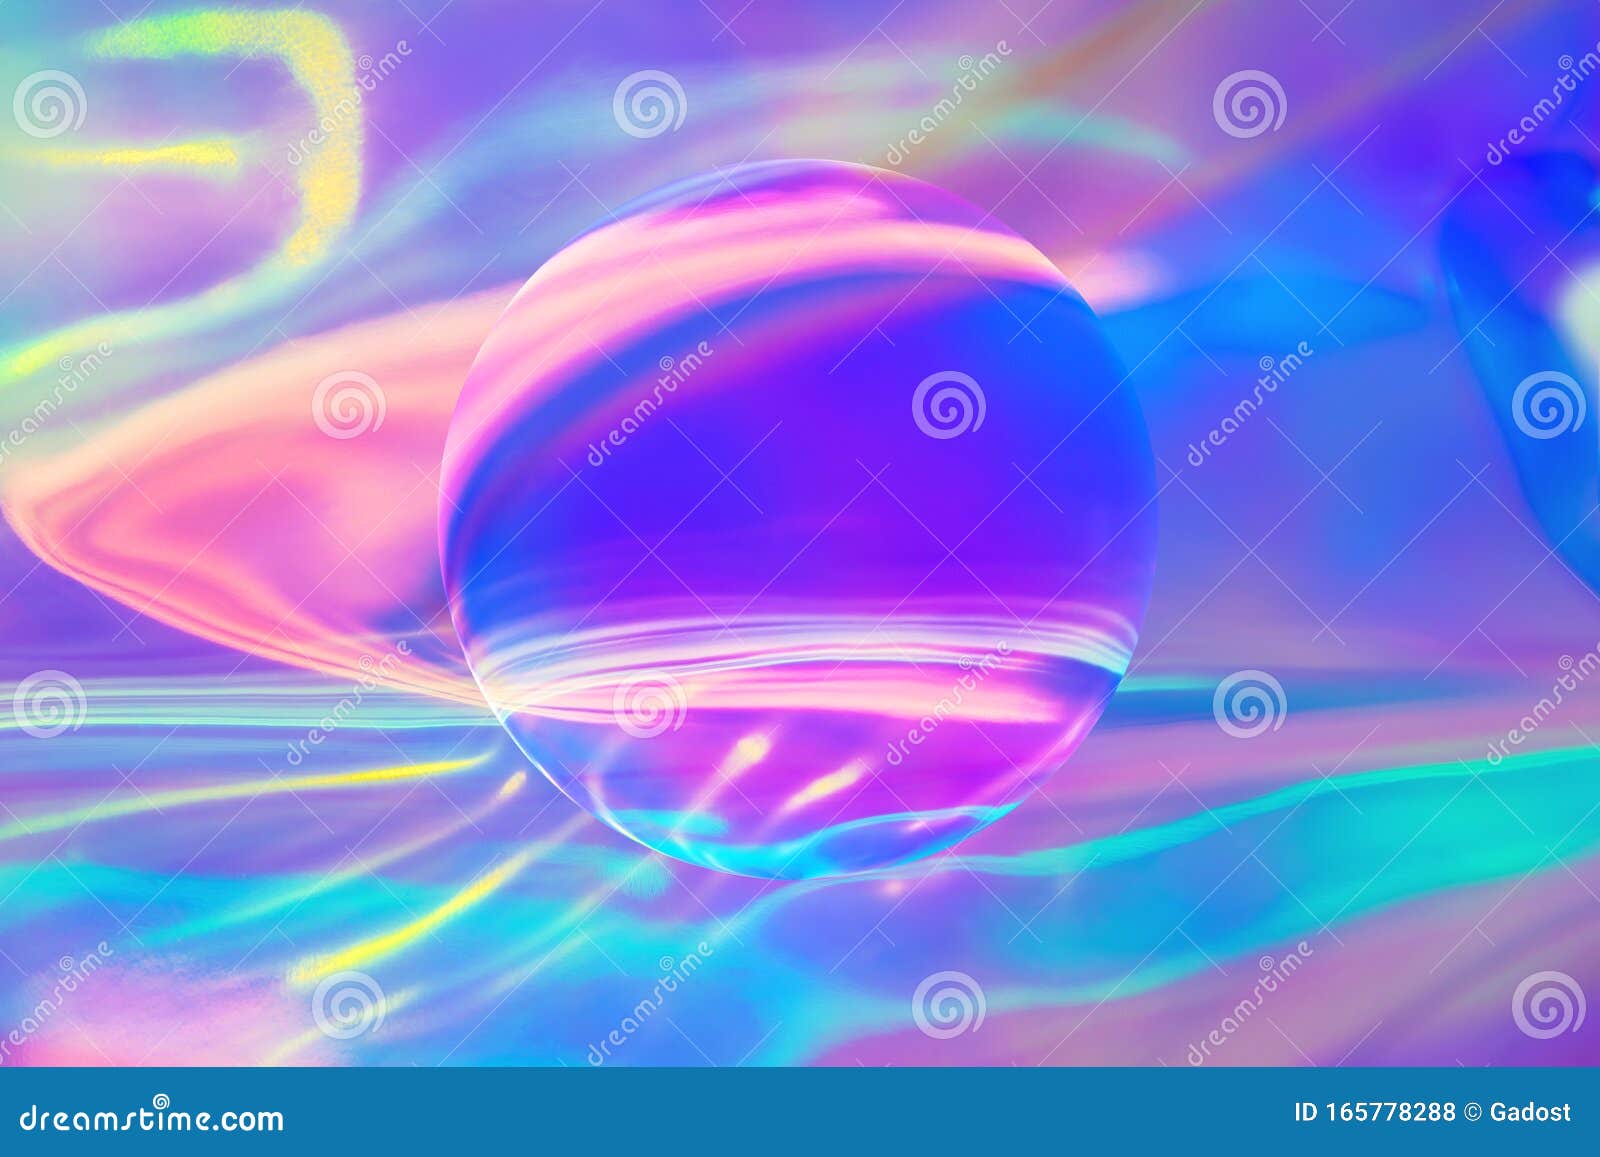 霓虹色全息背景库存例证 插画包括有霓虹色全息背景